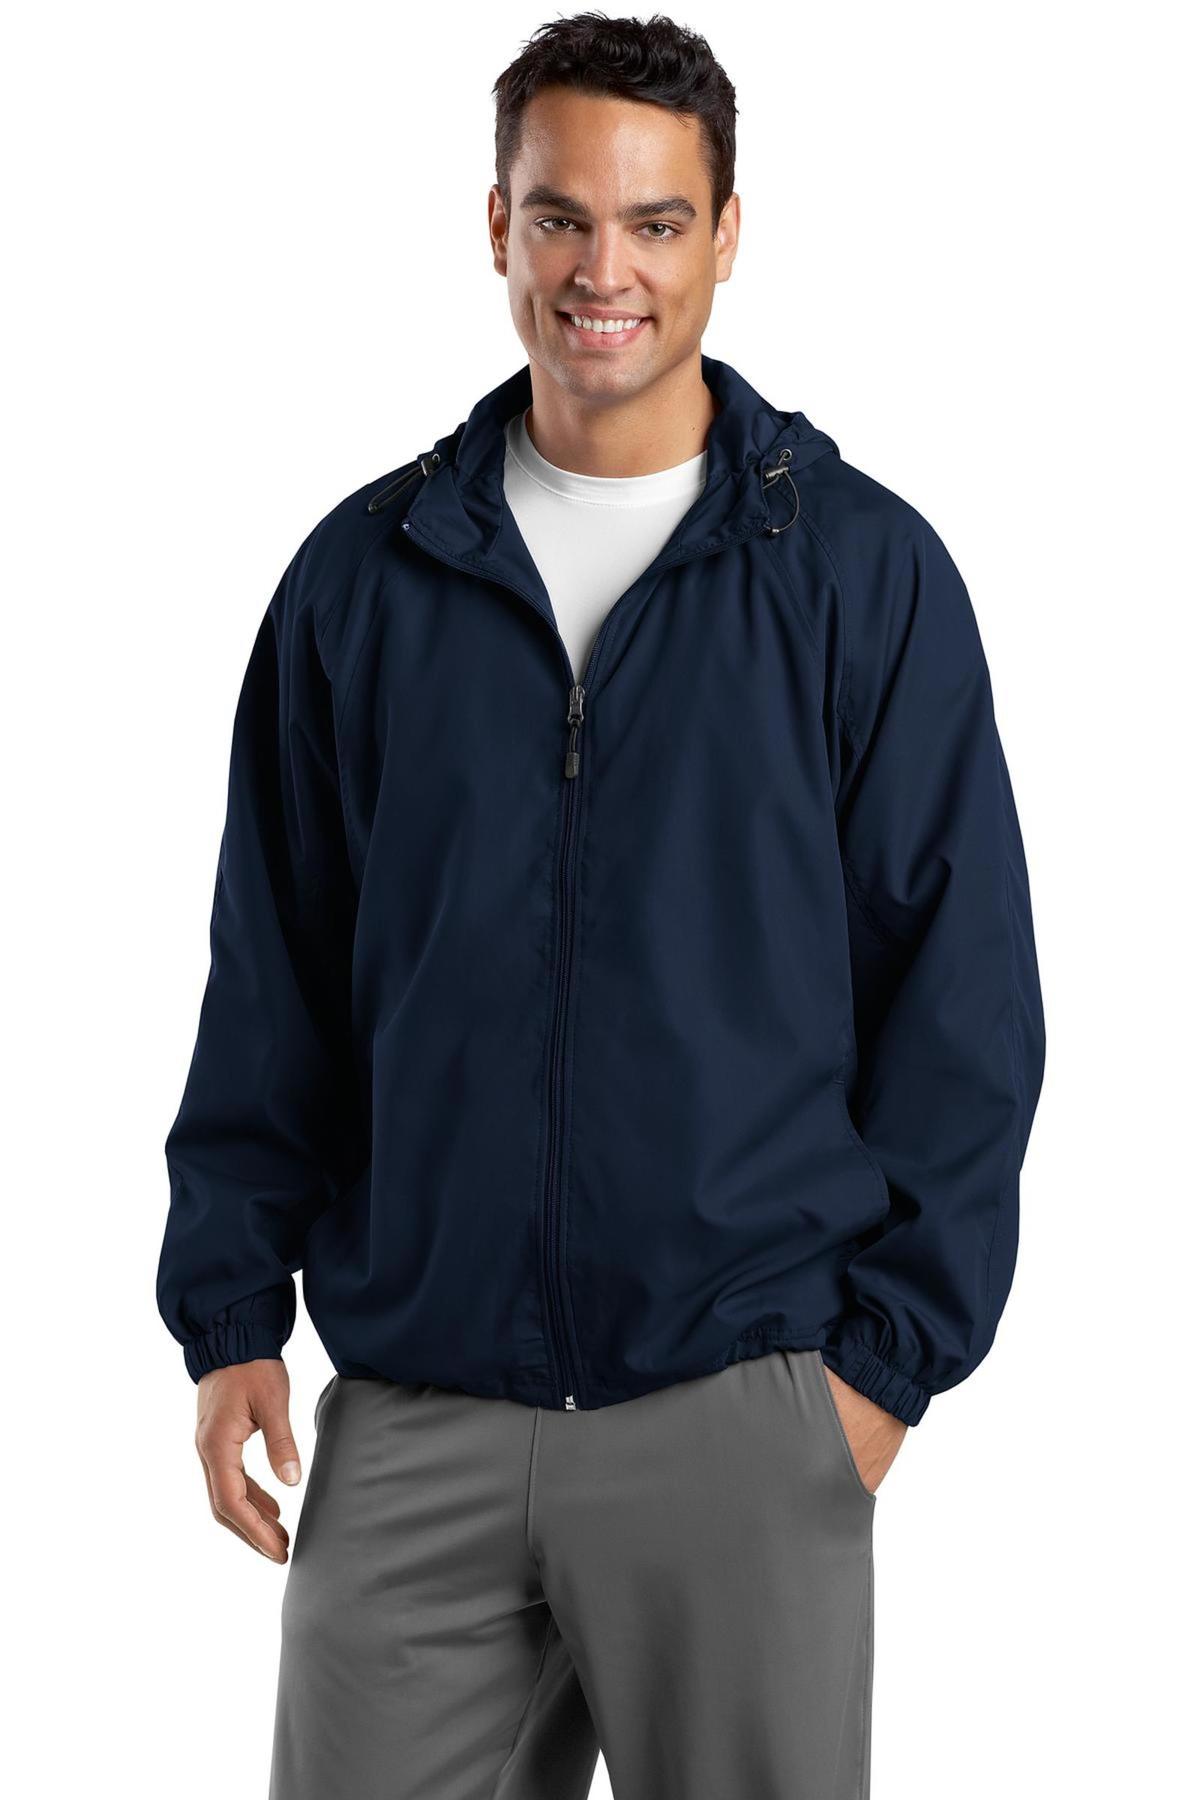 Sport-Tek Embroidered Men's Hooded Weather Resistant Jacket - Queensboro